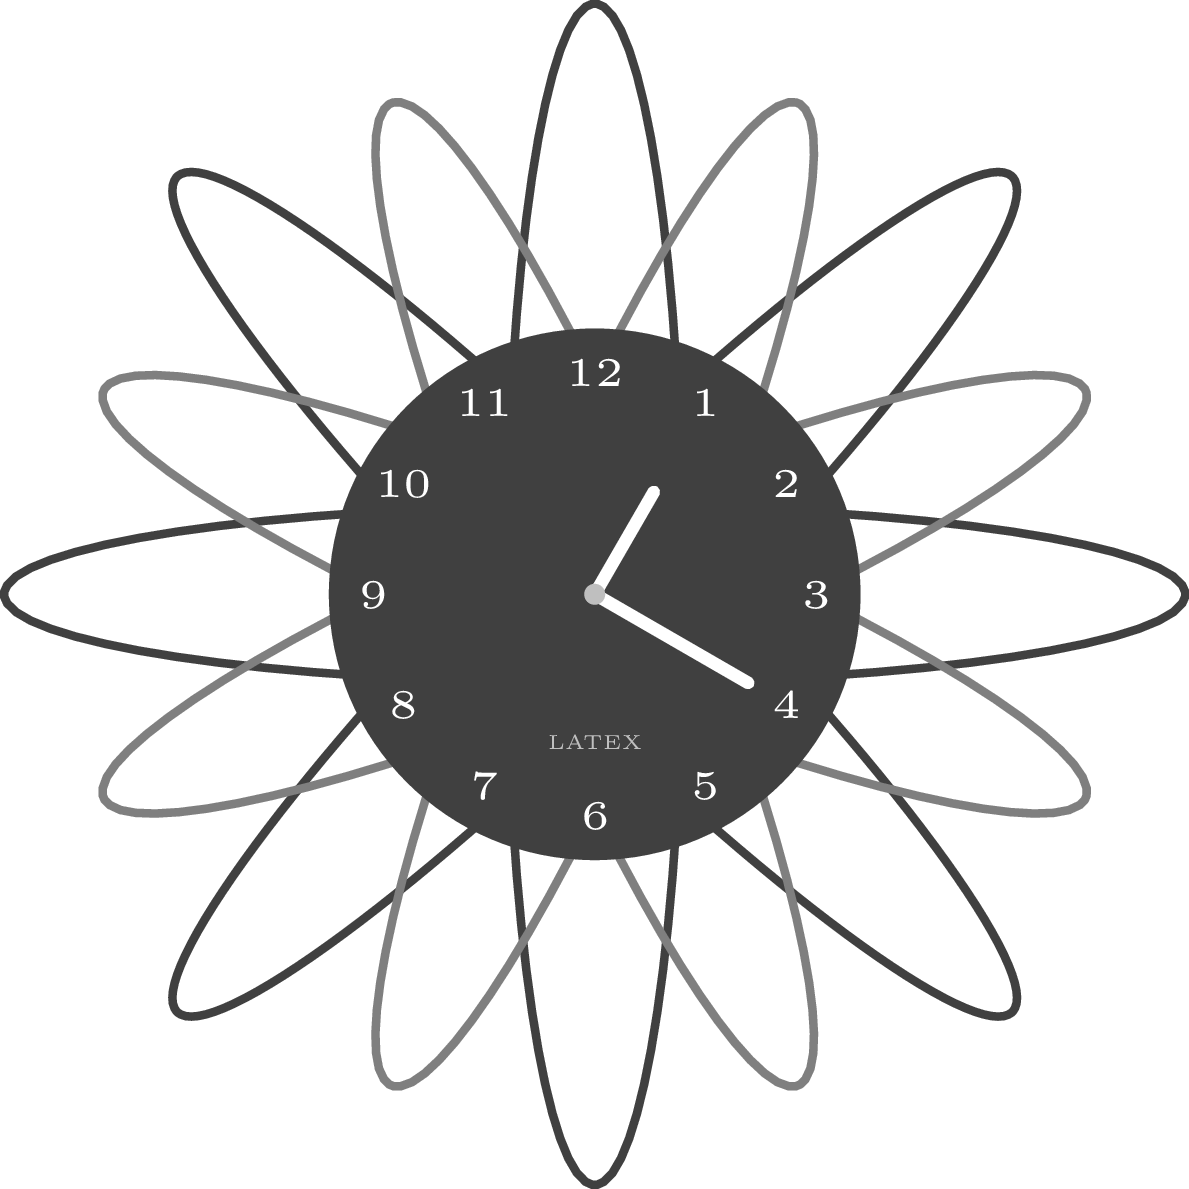 clock in Tikz